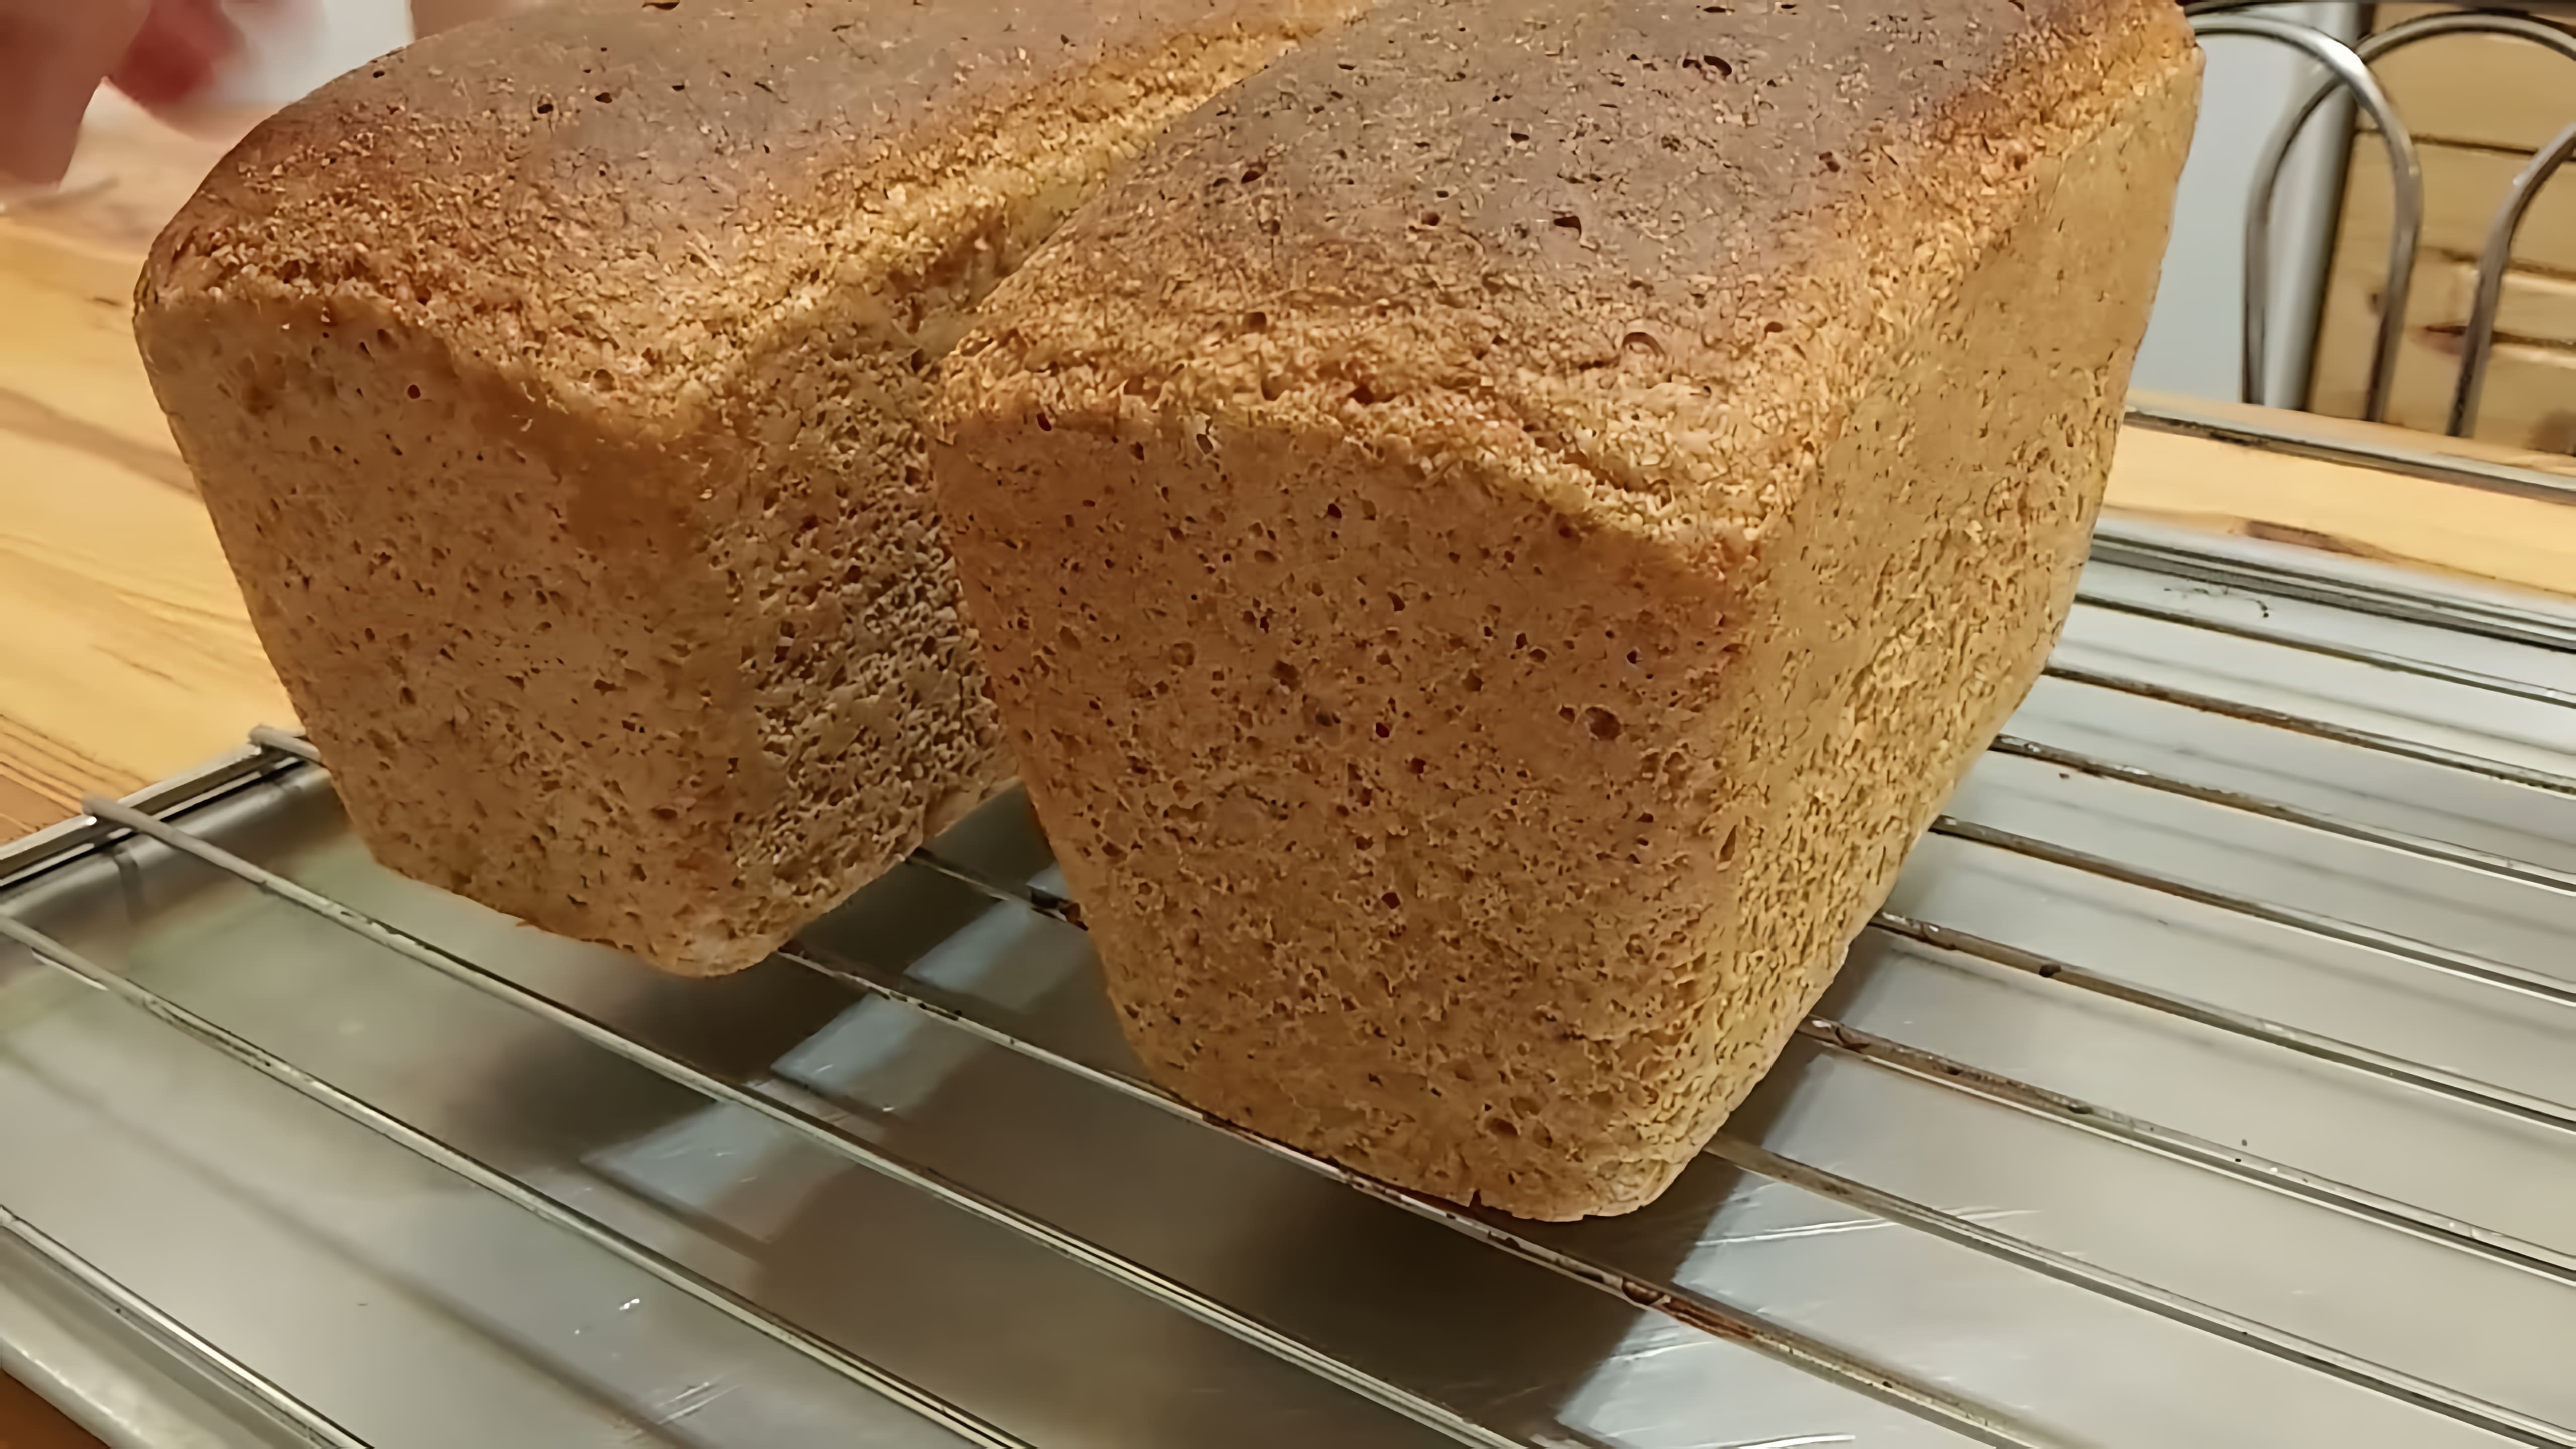 В этом видео демонстрируется рецепт домашнего пшеничного хлеба с использованием цельнозерновой муки